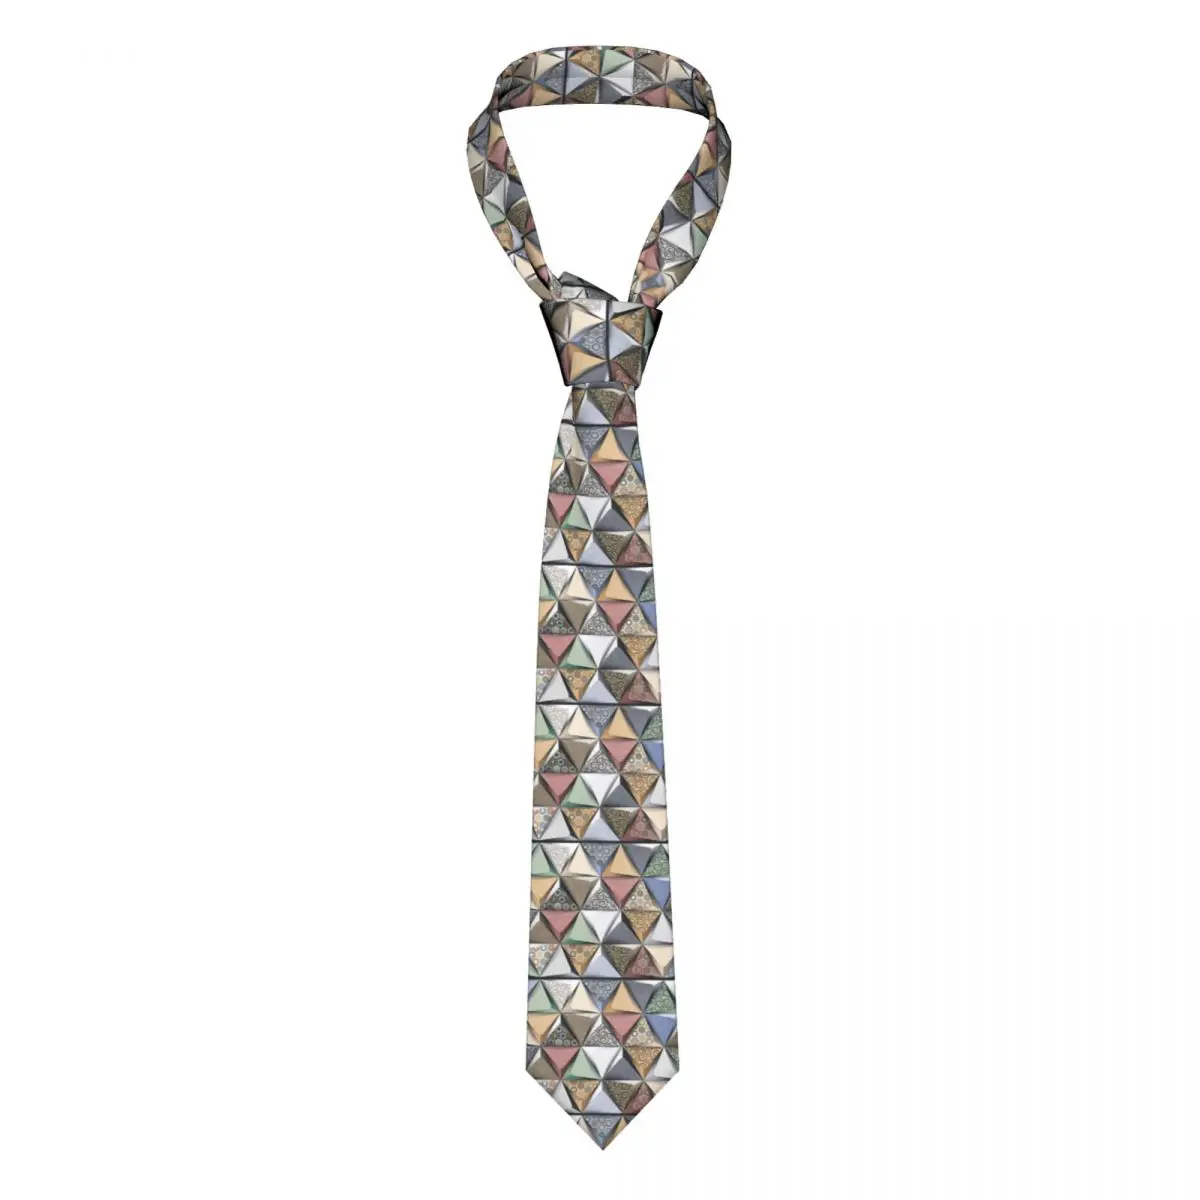 

Мраморный Настенный декор, мужской галстук, тонкий галстук из полиэстера шириной 8 см, Синий 3D геометрический шейный галстук для мужчин, кос...